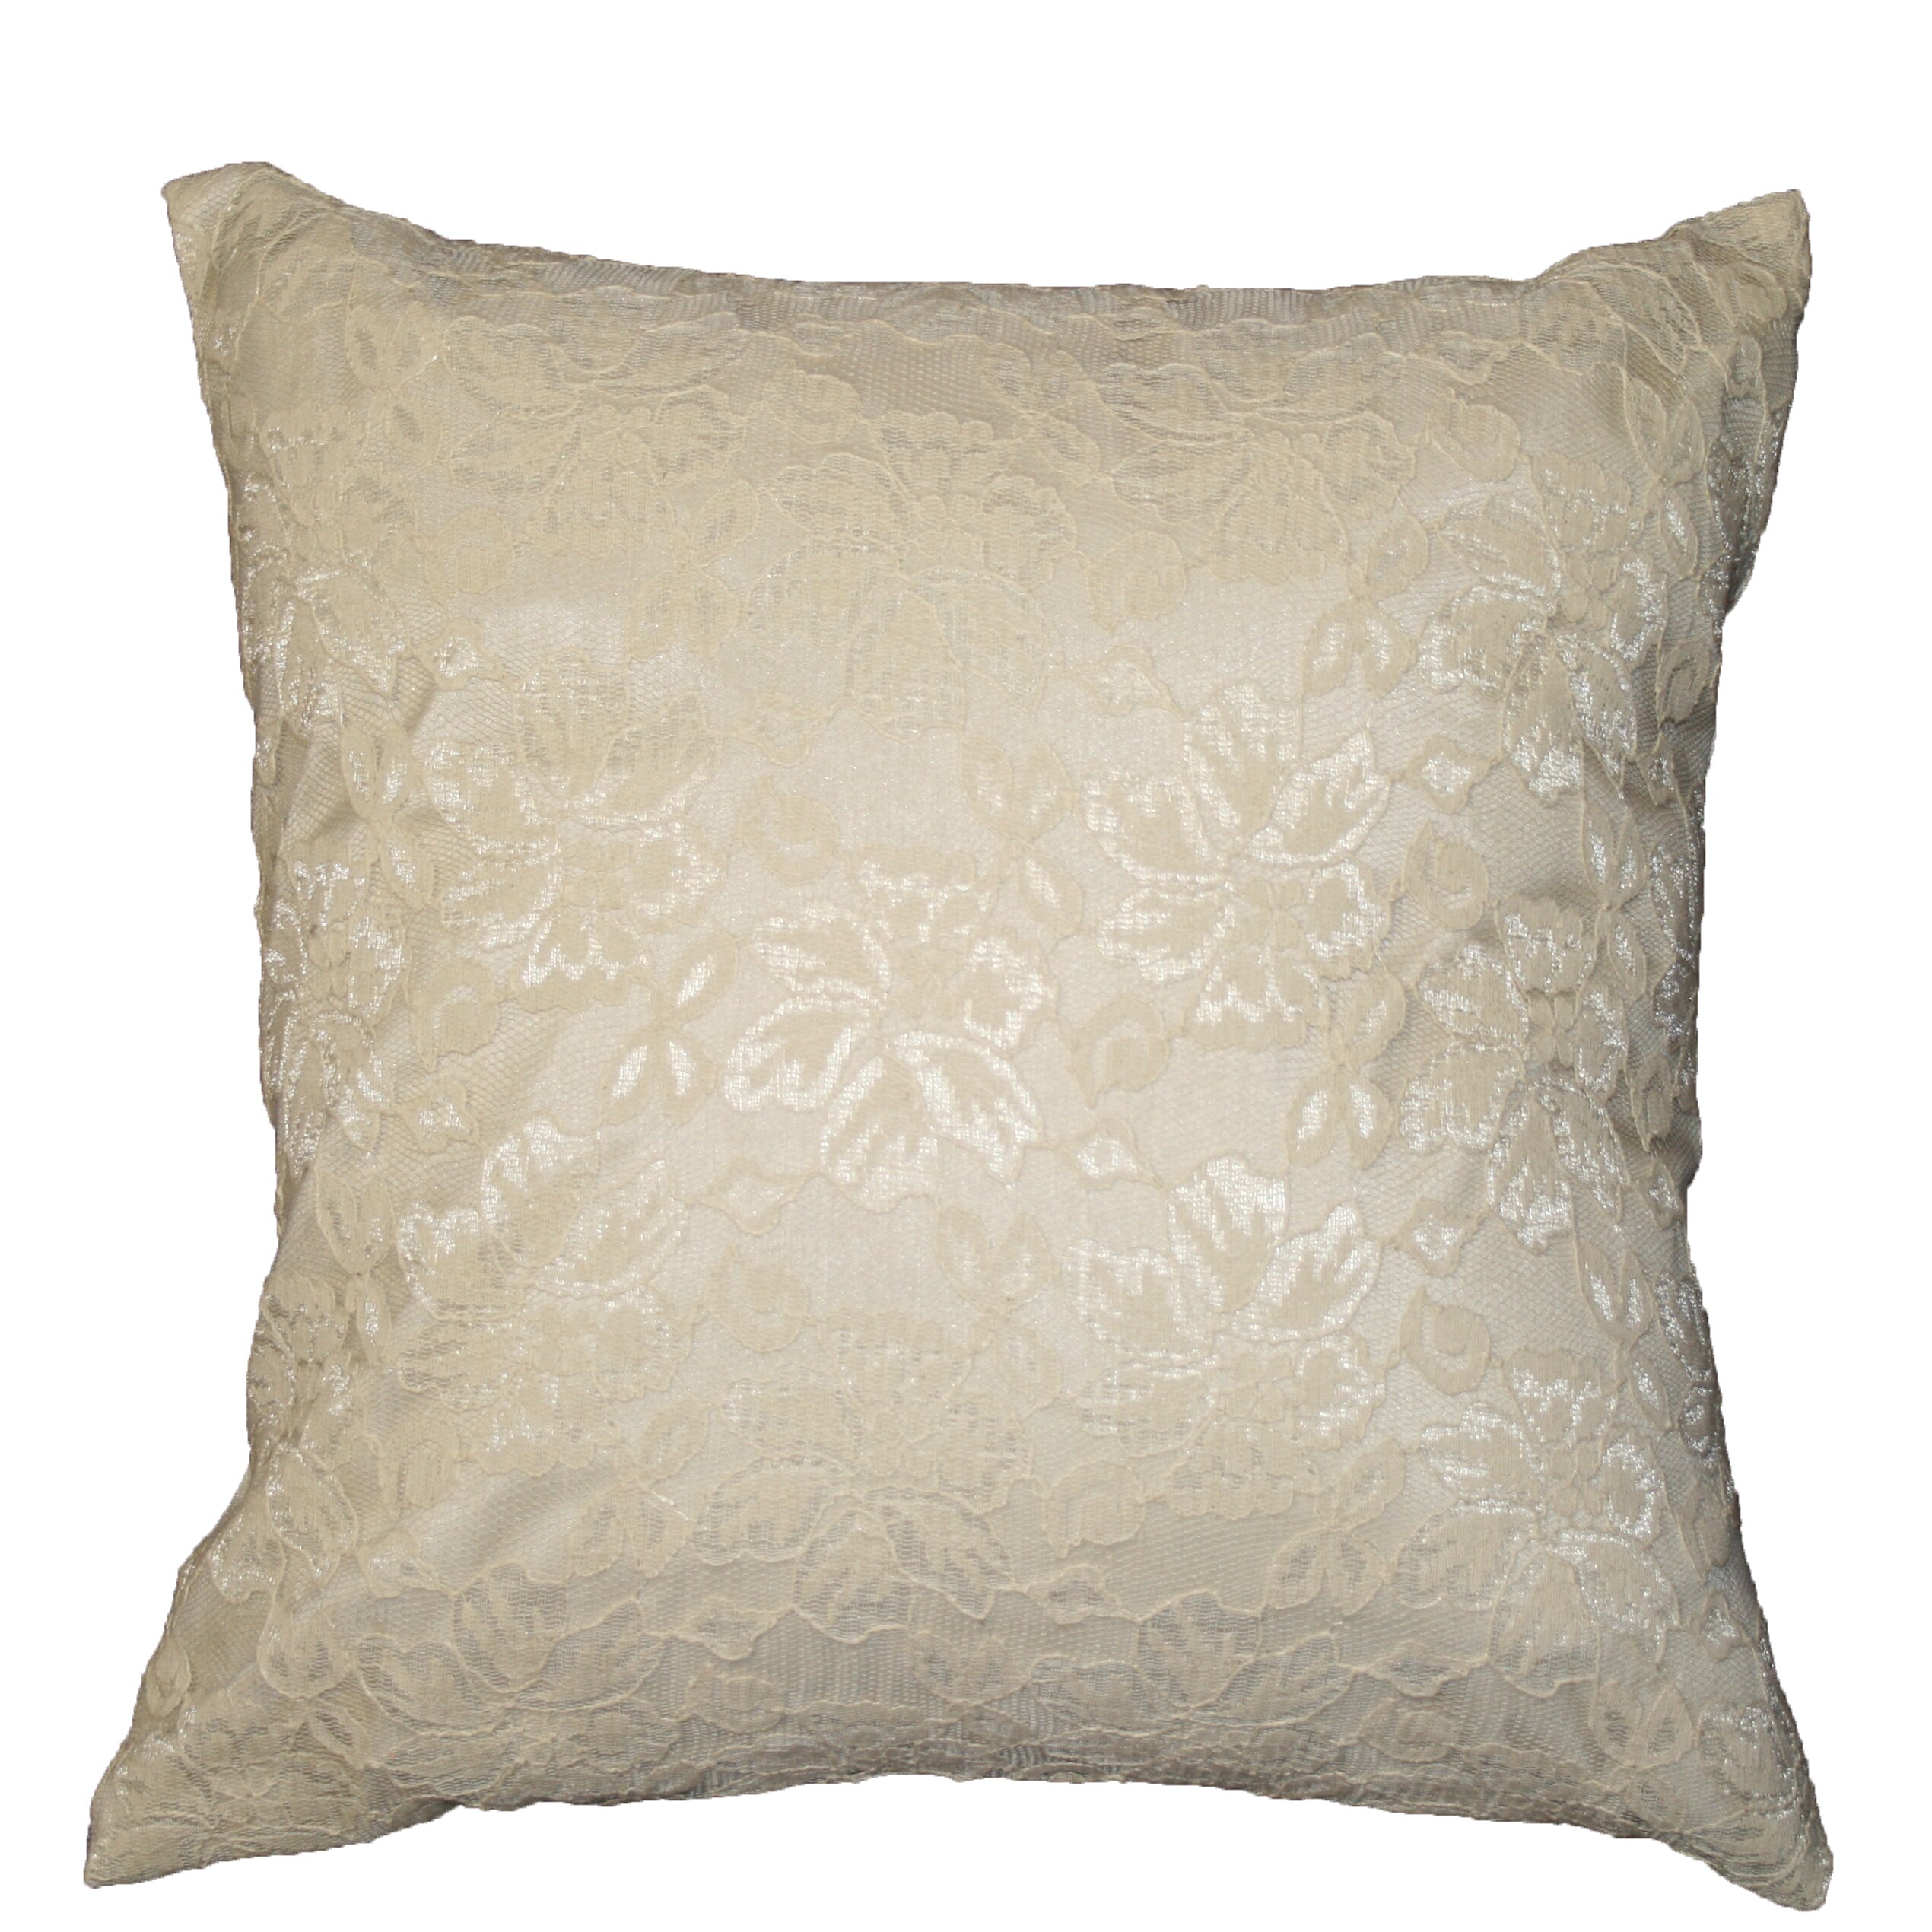 Chantilly Lace Decorative Throw Pillow | Wayfair